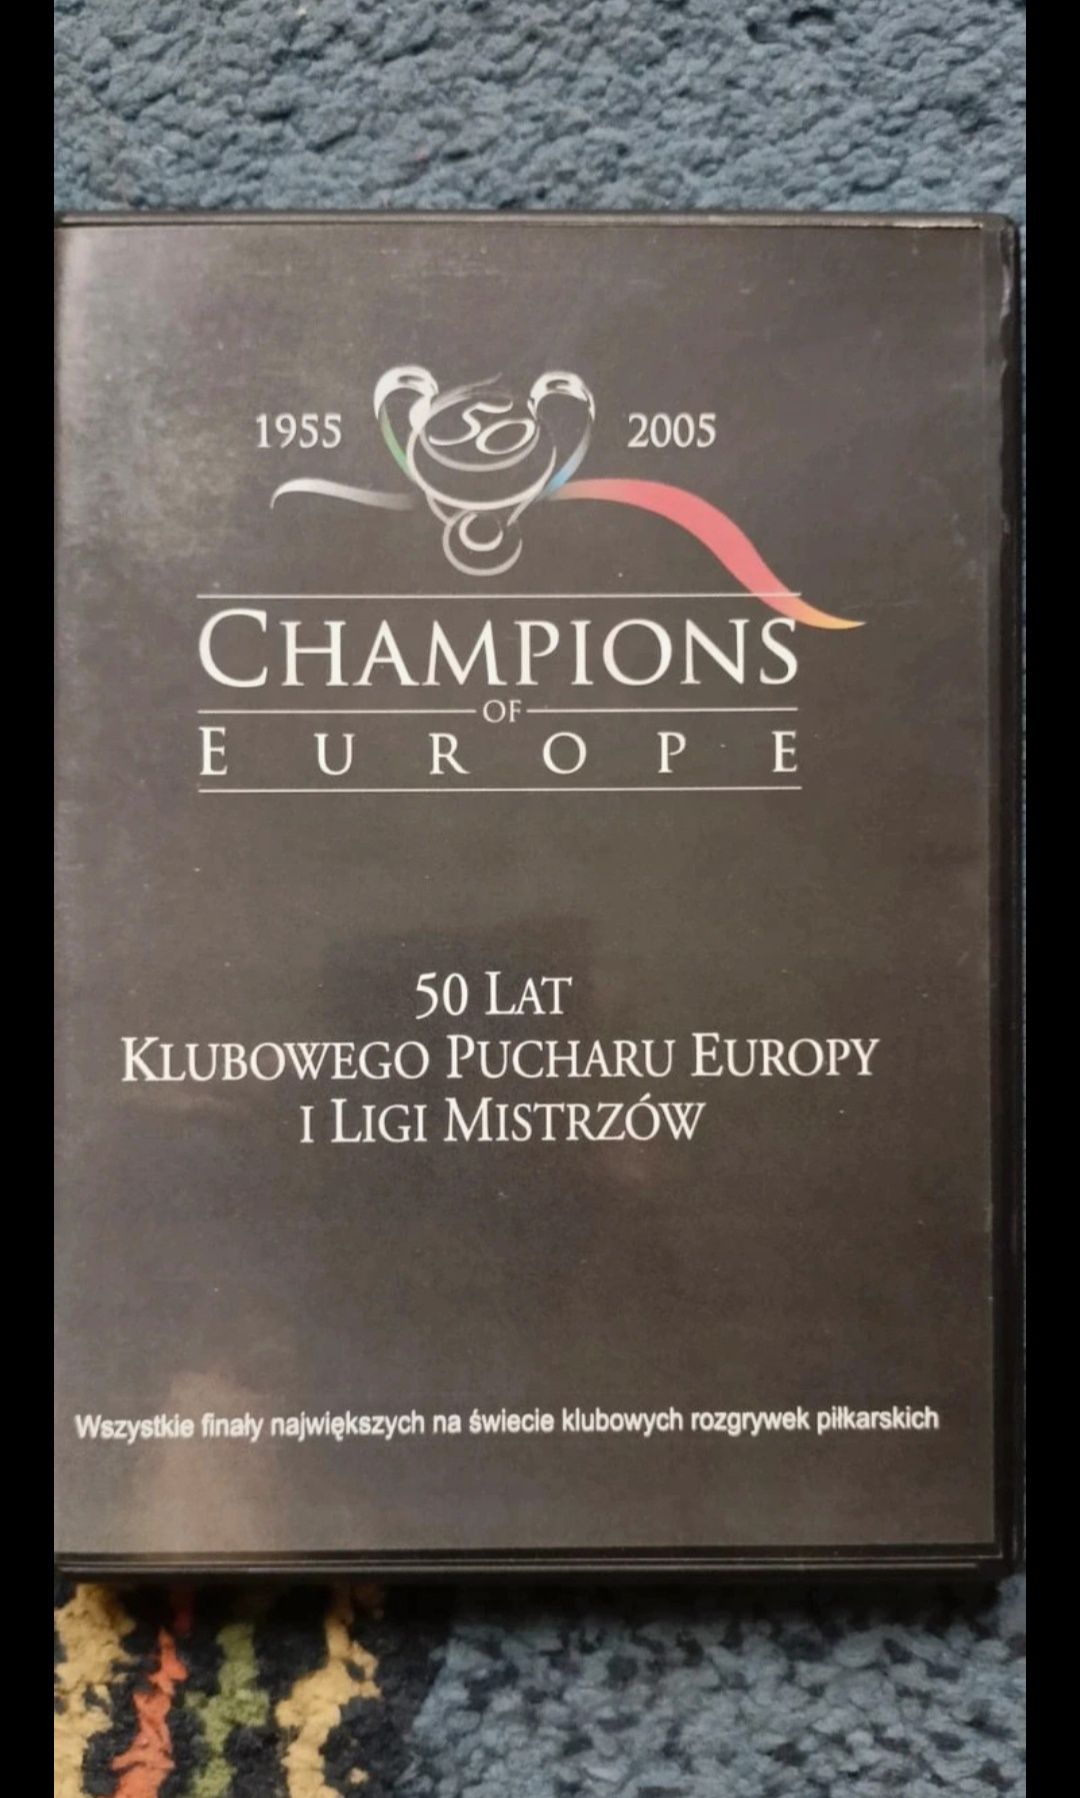 50 lat - Klubowy puchar Europy i Ligi mistrzów